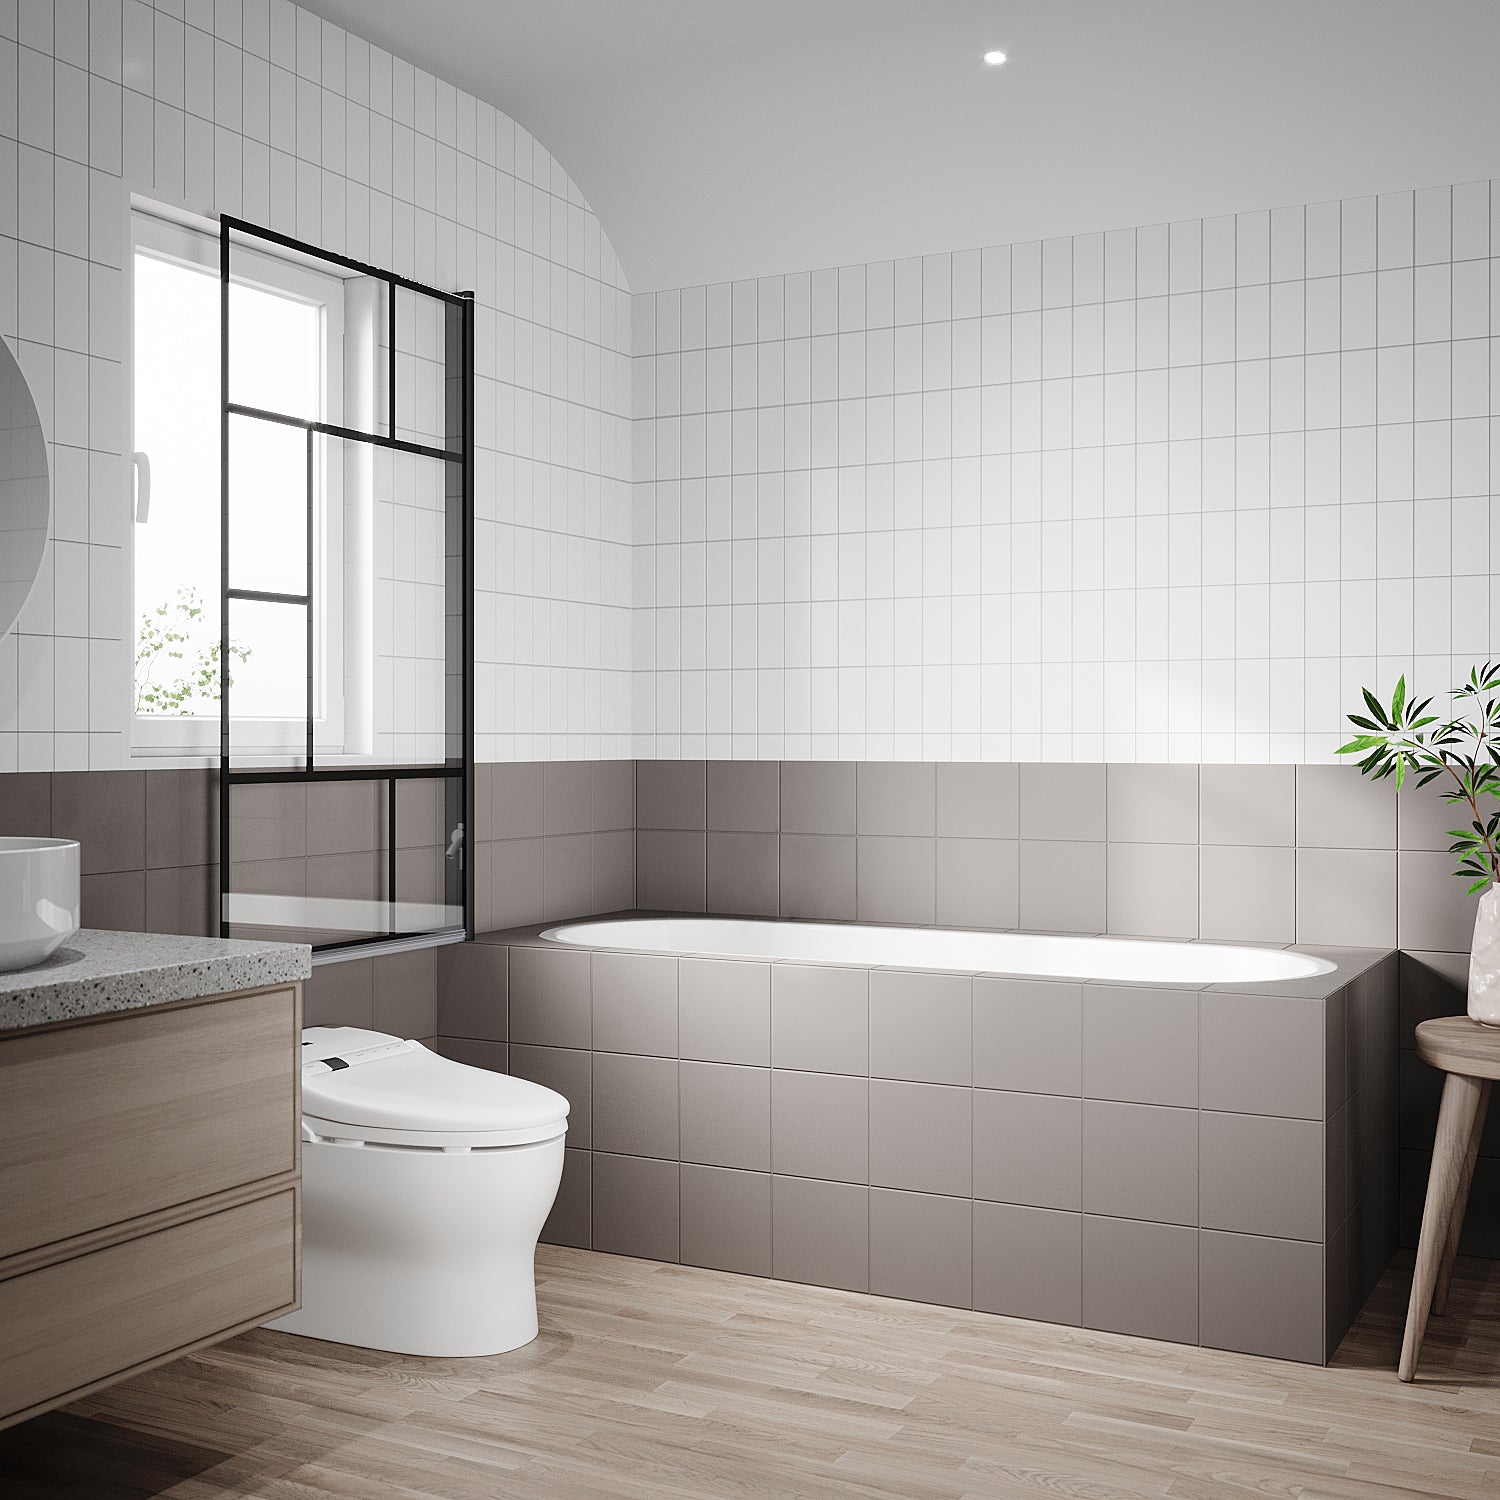 SONNI Duschwand für Badewanne mit schwarzem Gitterdesign NANO-GLAS Badewannenaufsatz faltbar 80x140 cm(BxH) Duschabtrennung Badewanne